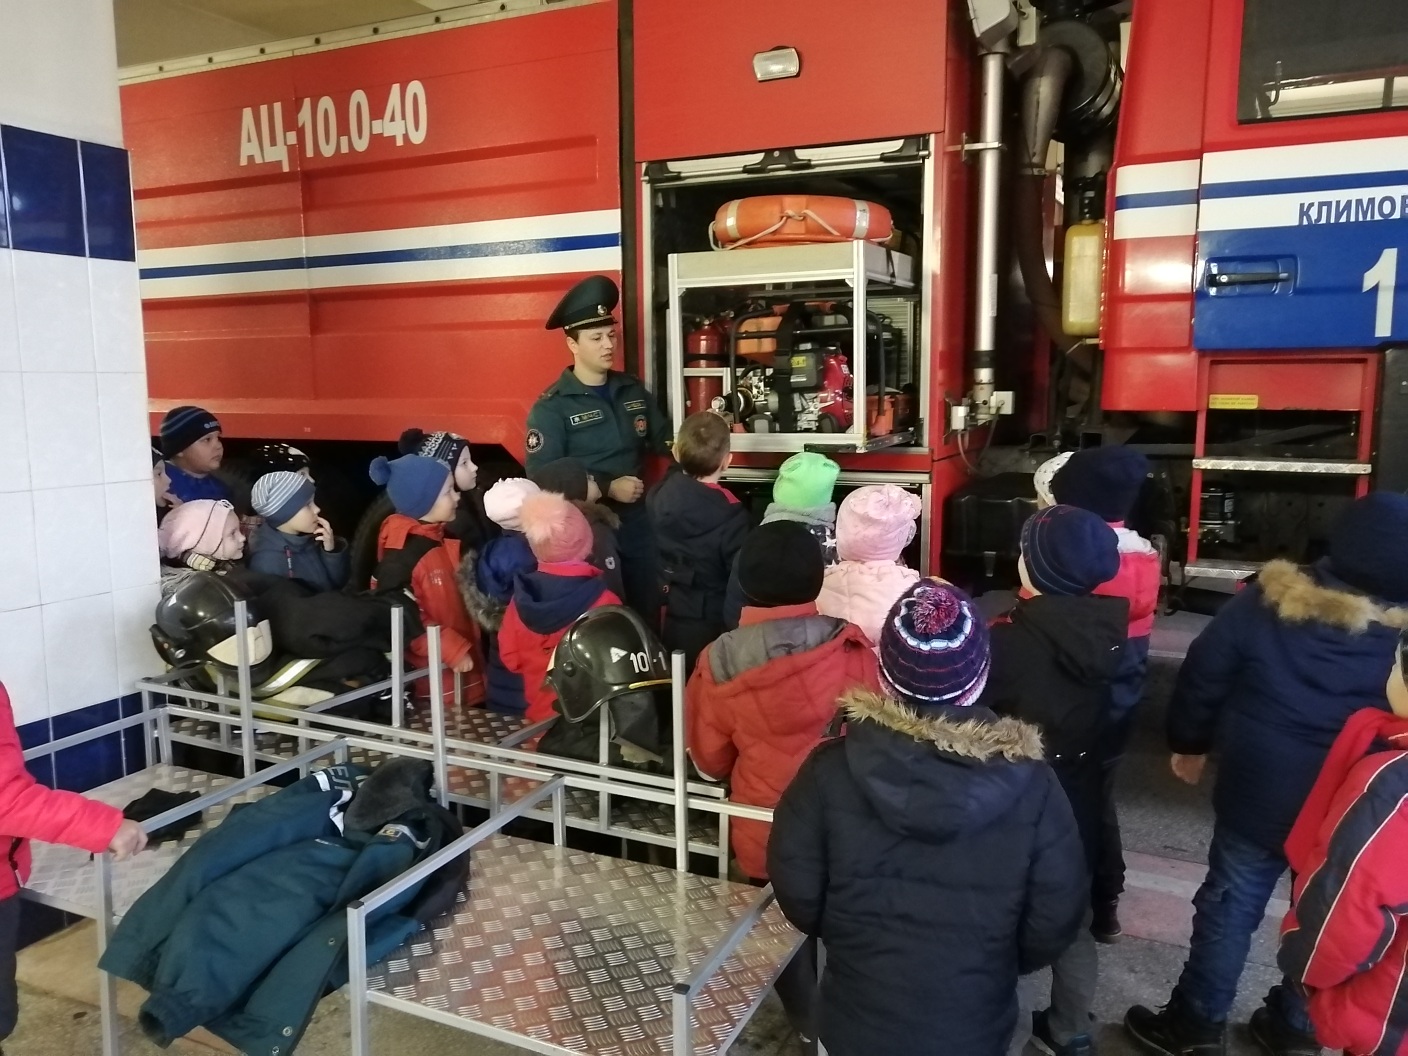 Спасателей посетили учащиеся 3-ей городской школы. Климовичи